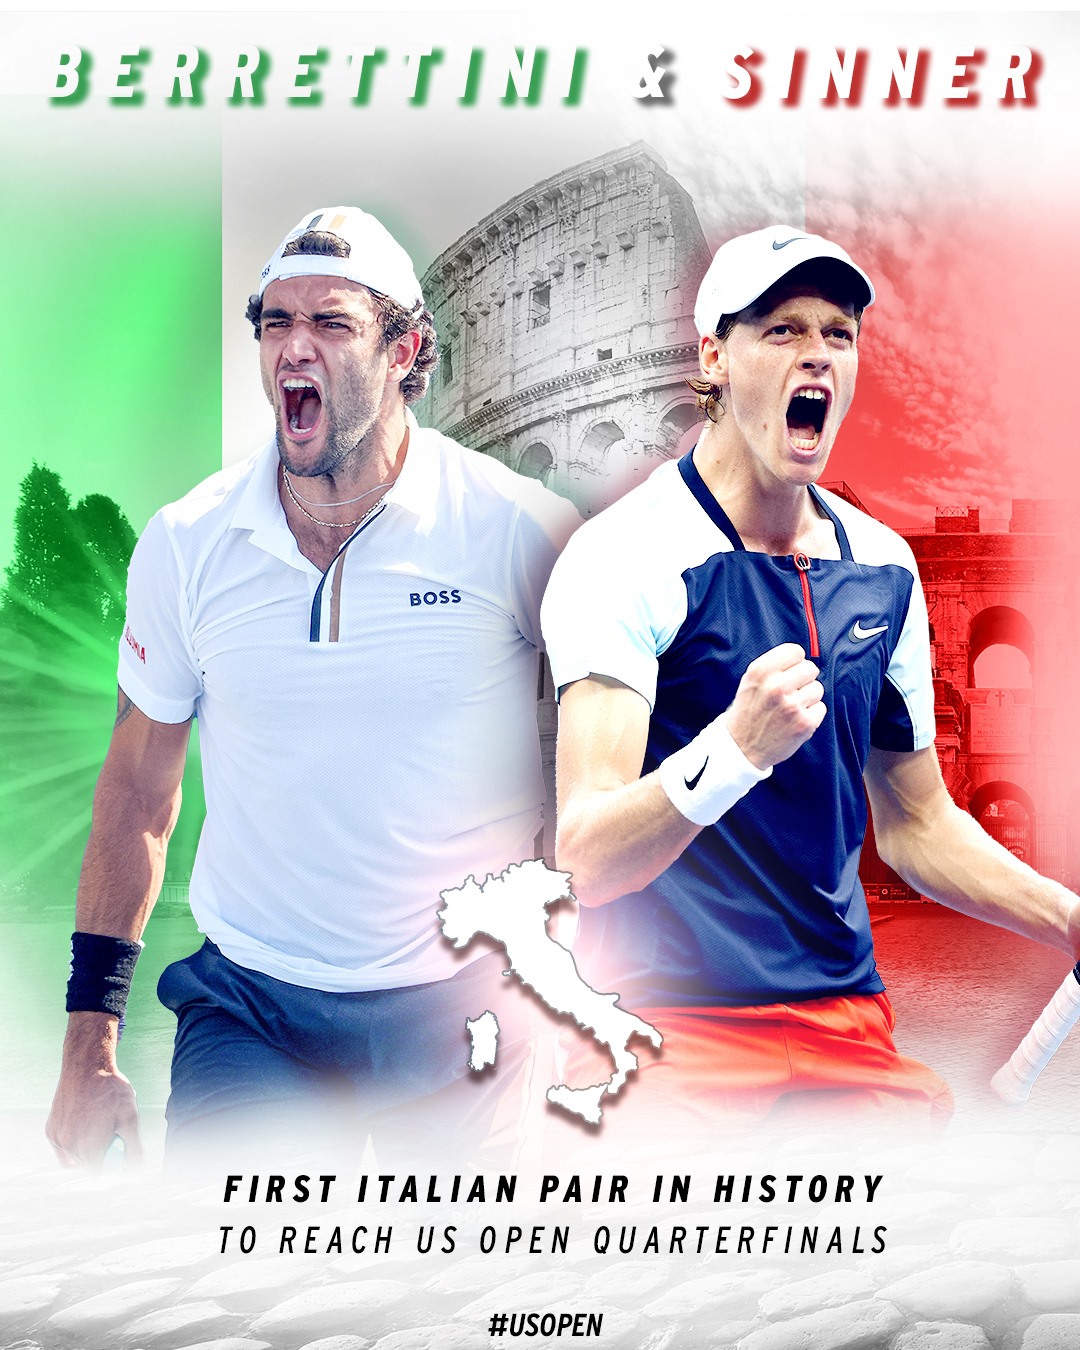 Trang mạng xã hội của US Open thông tin lần đầu tiên có 2 tay vợt người Italia vào tứ kết của giải đấu. Ảnh: US Open